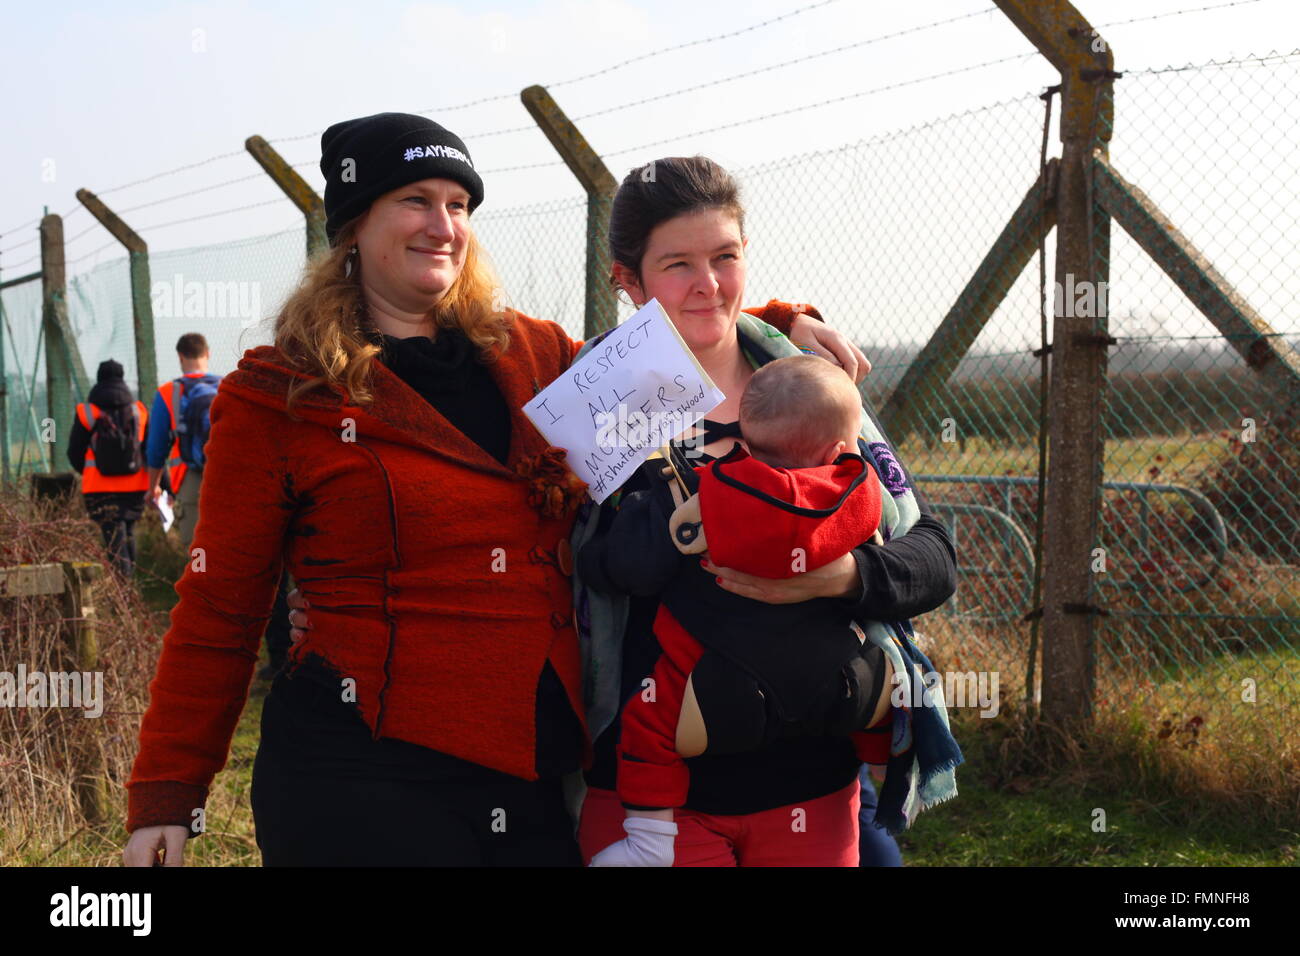 Bedfordshire, Reino Unido. 12 de marzo de 2016. Una pareja con un bebé. Miles de manifestantes se reunieron en el centro de detención de Yarl's Wood para exigir el cierre de todos los centros de detención de inmigración en el Reino Unido. Crédito: Penelope Barritt/Alamy Live News Foto de stock